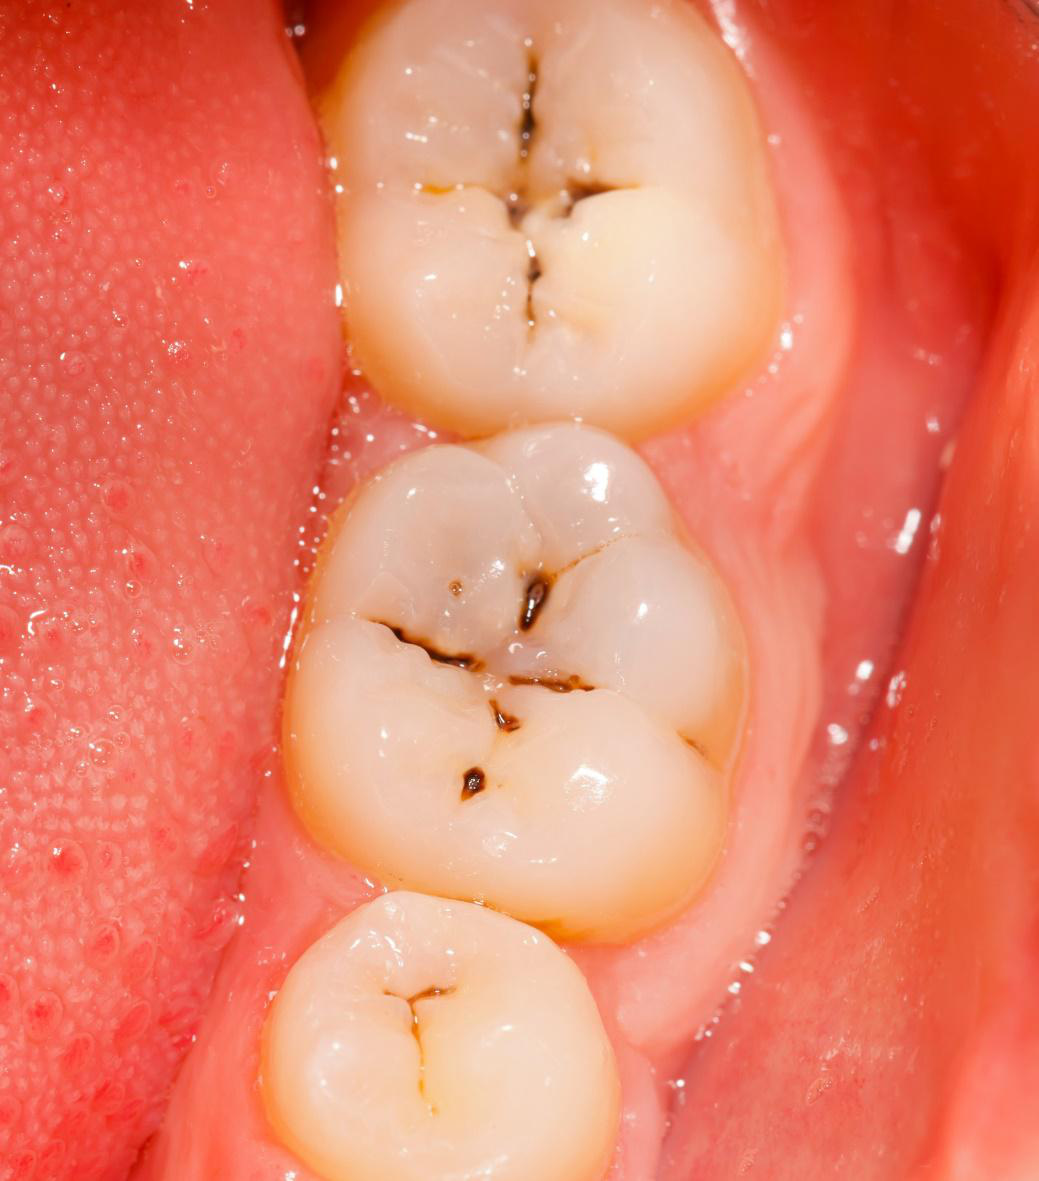 Những bệnh lý răng miệng có thể gây mất răng vĩnh viễn - Ảnh 1.